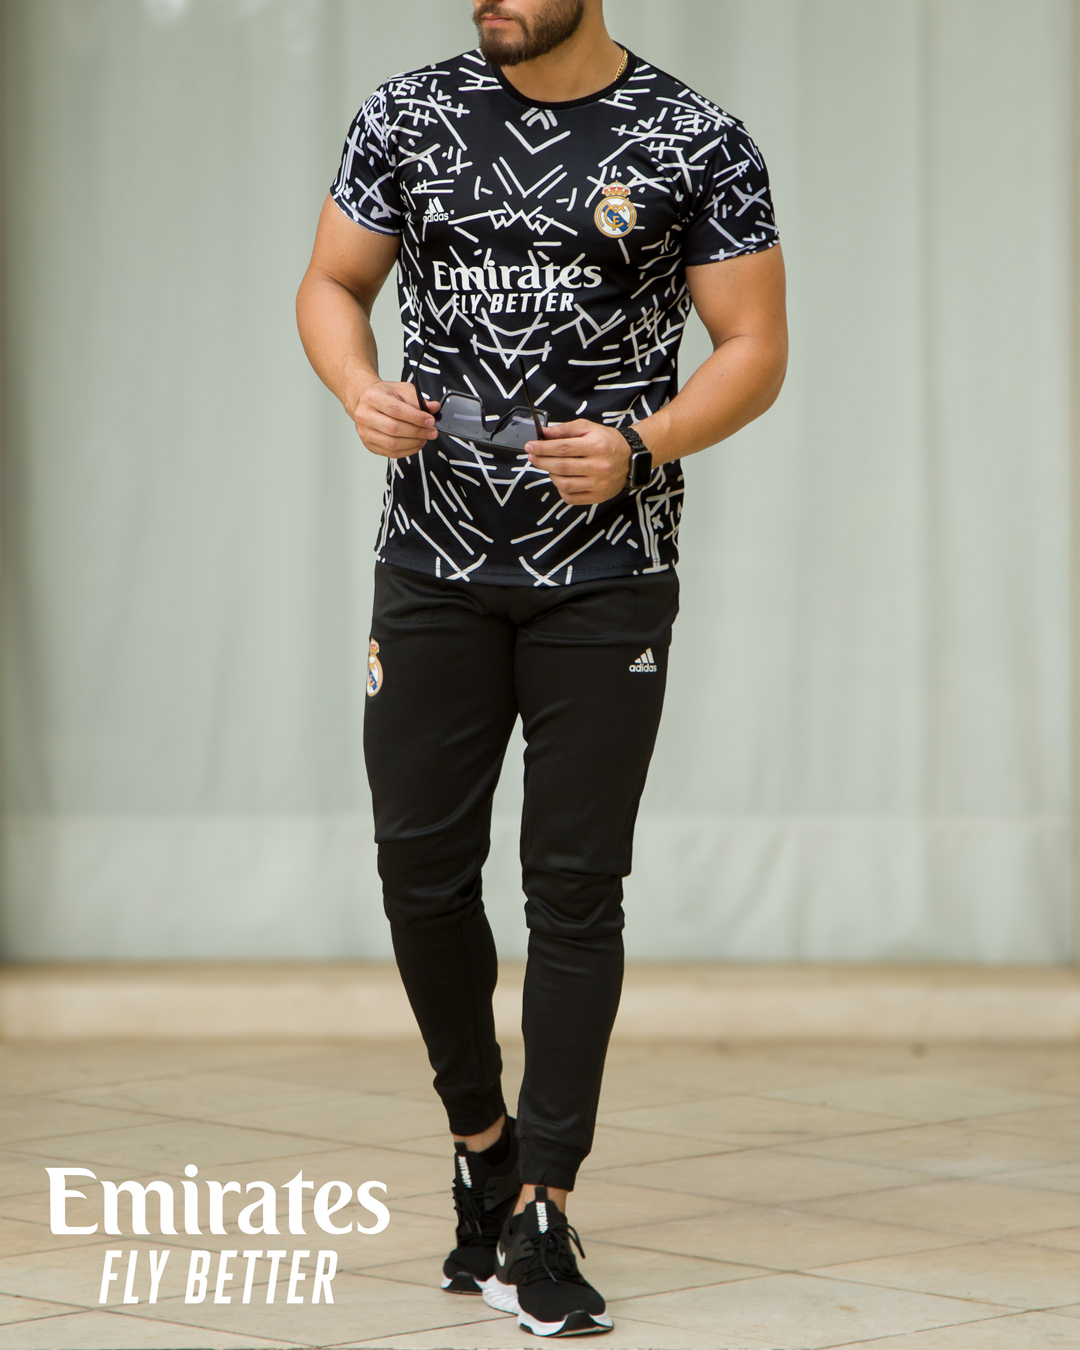 ست تیشرت شلوار مردانه adidas مدل Emihates اینستاگرام و تلگرام